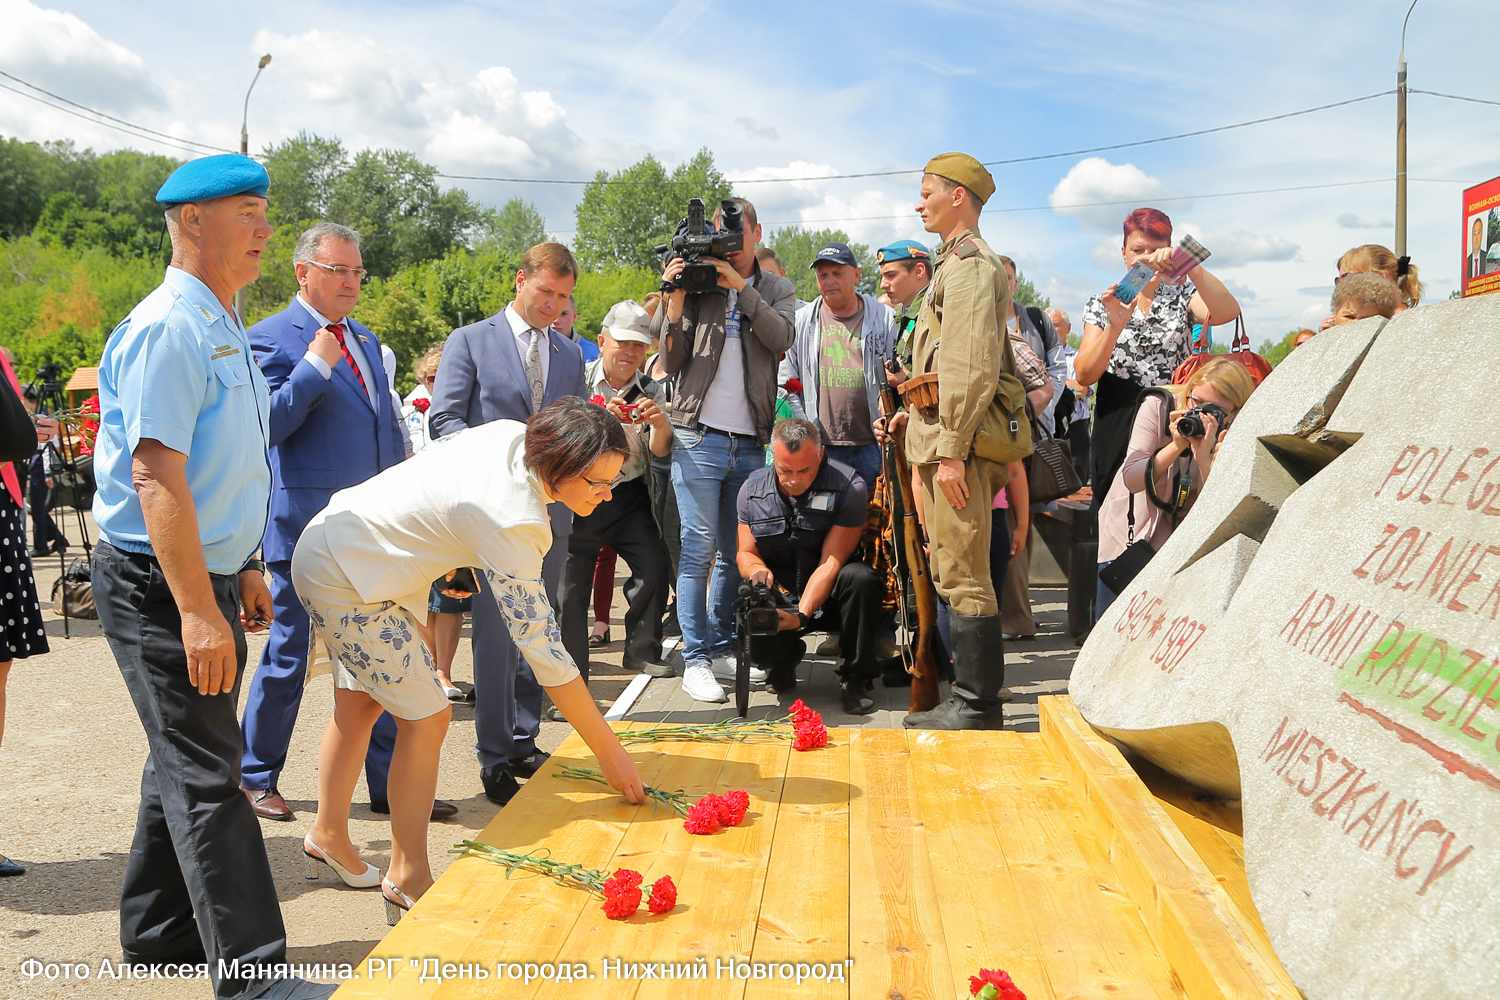 56 млн рублей планируется выделить на реконструкцию Парка Победы в Нижнем Новгороде  - фото 1